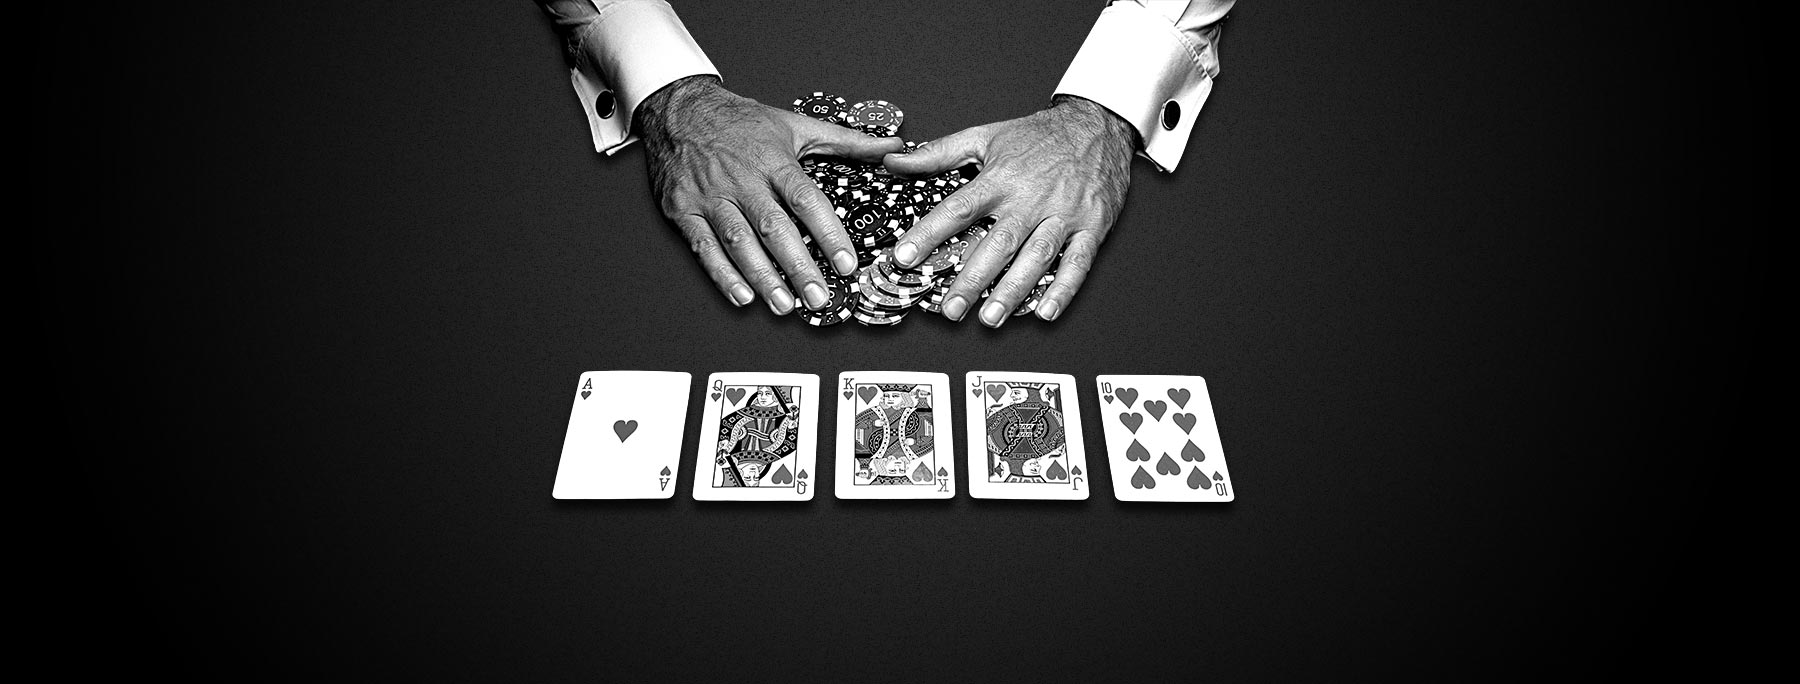 Casino en ligne: de multiples possibilités s'offrent à vous! 